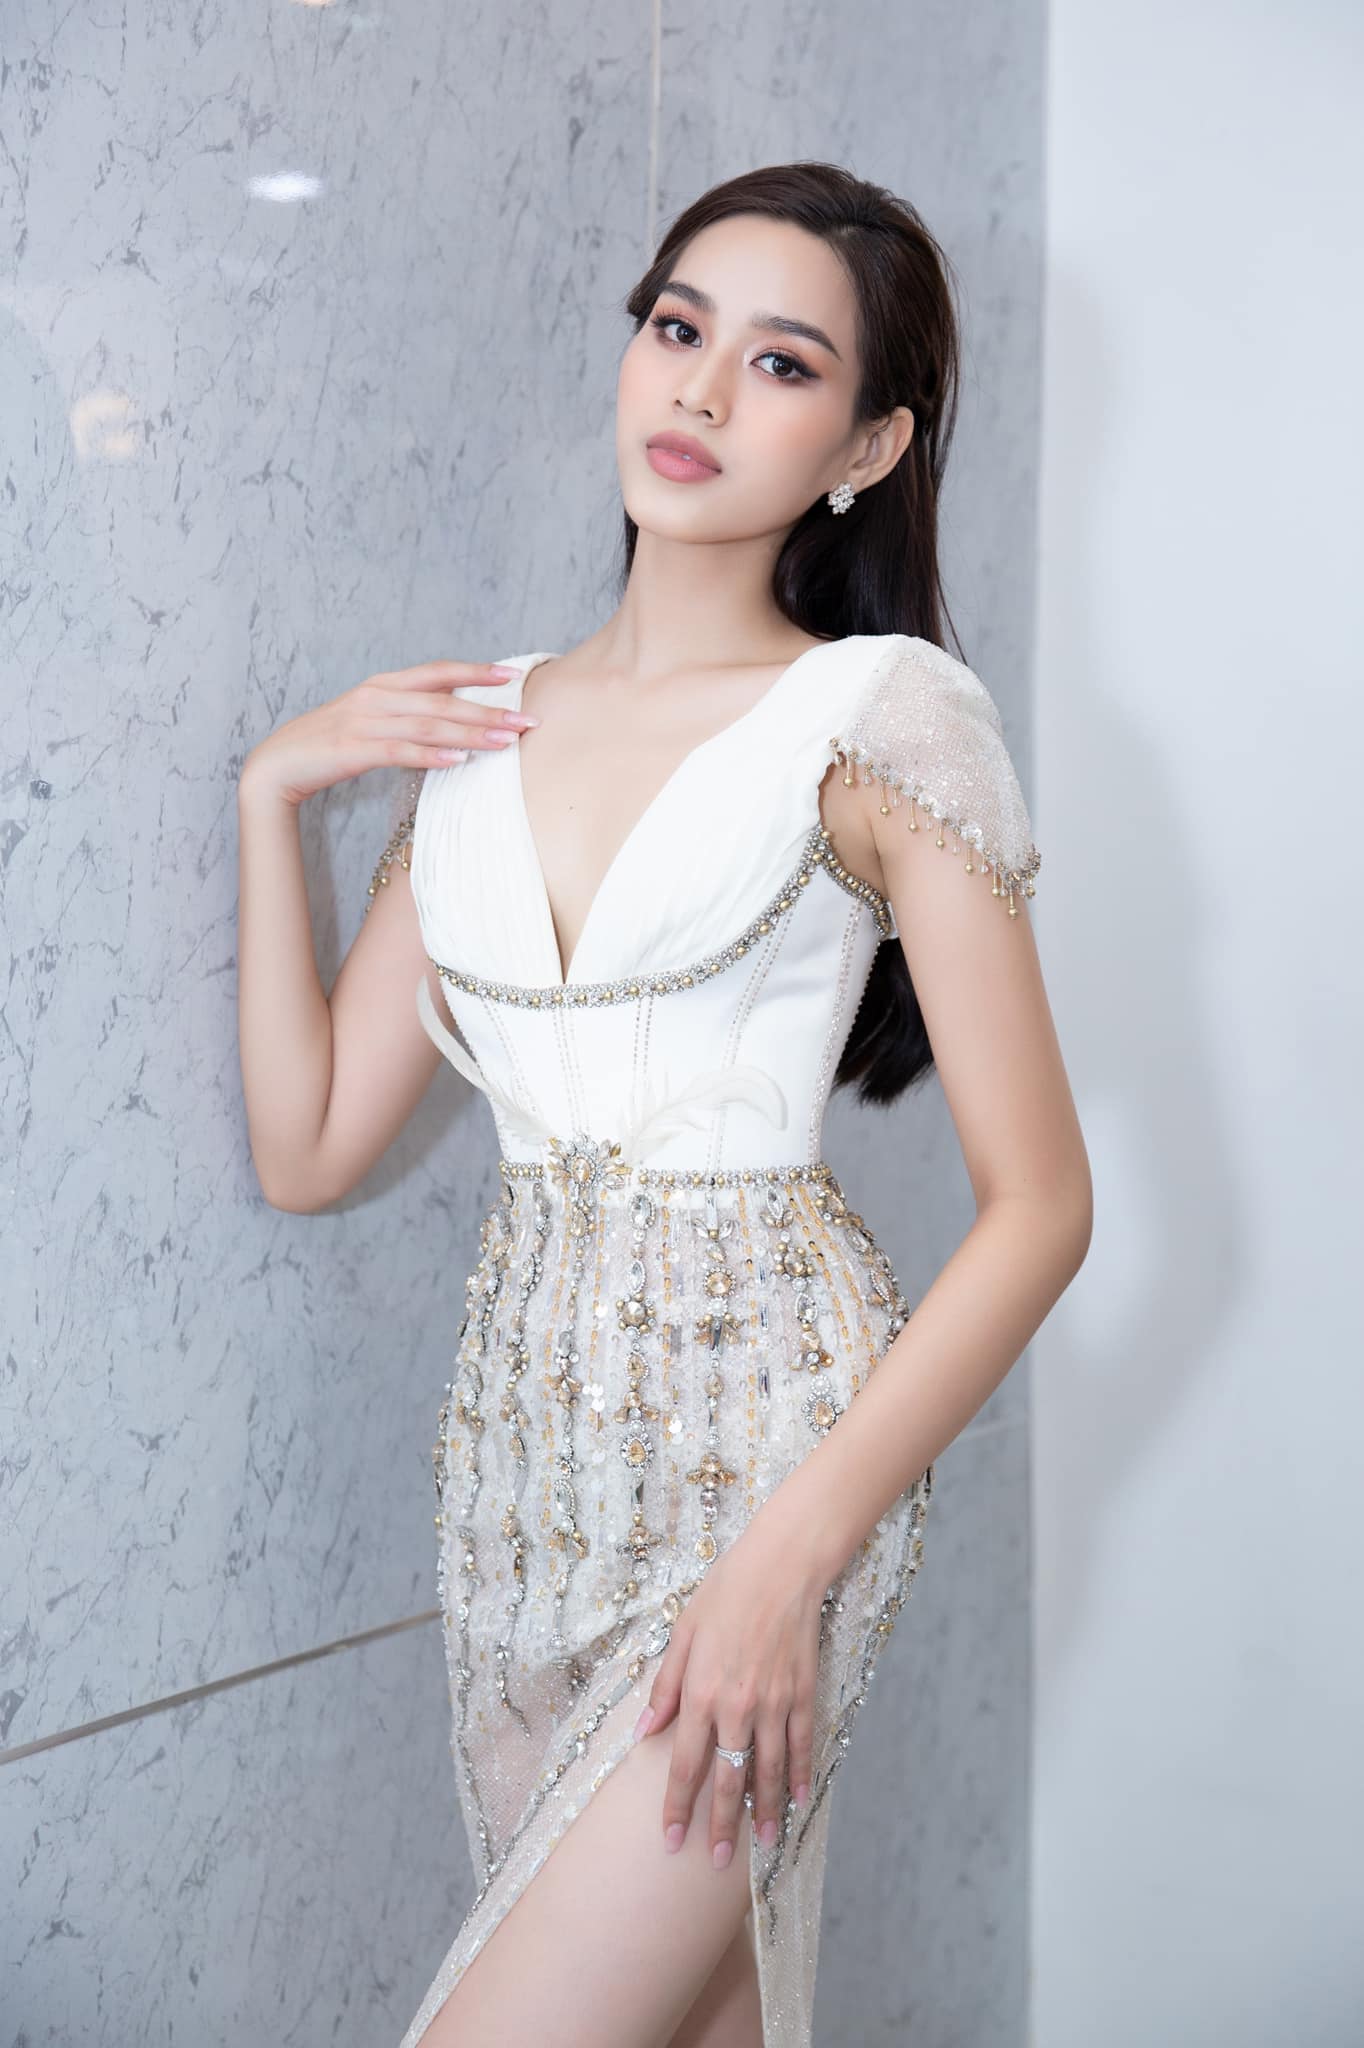 Đỗ Thị Hà sẽ đạt thành tích ra sao tại Miss World 2021?